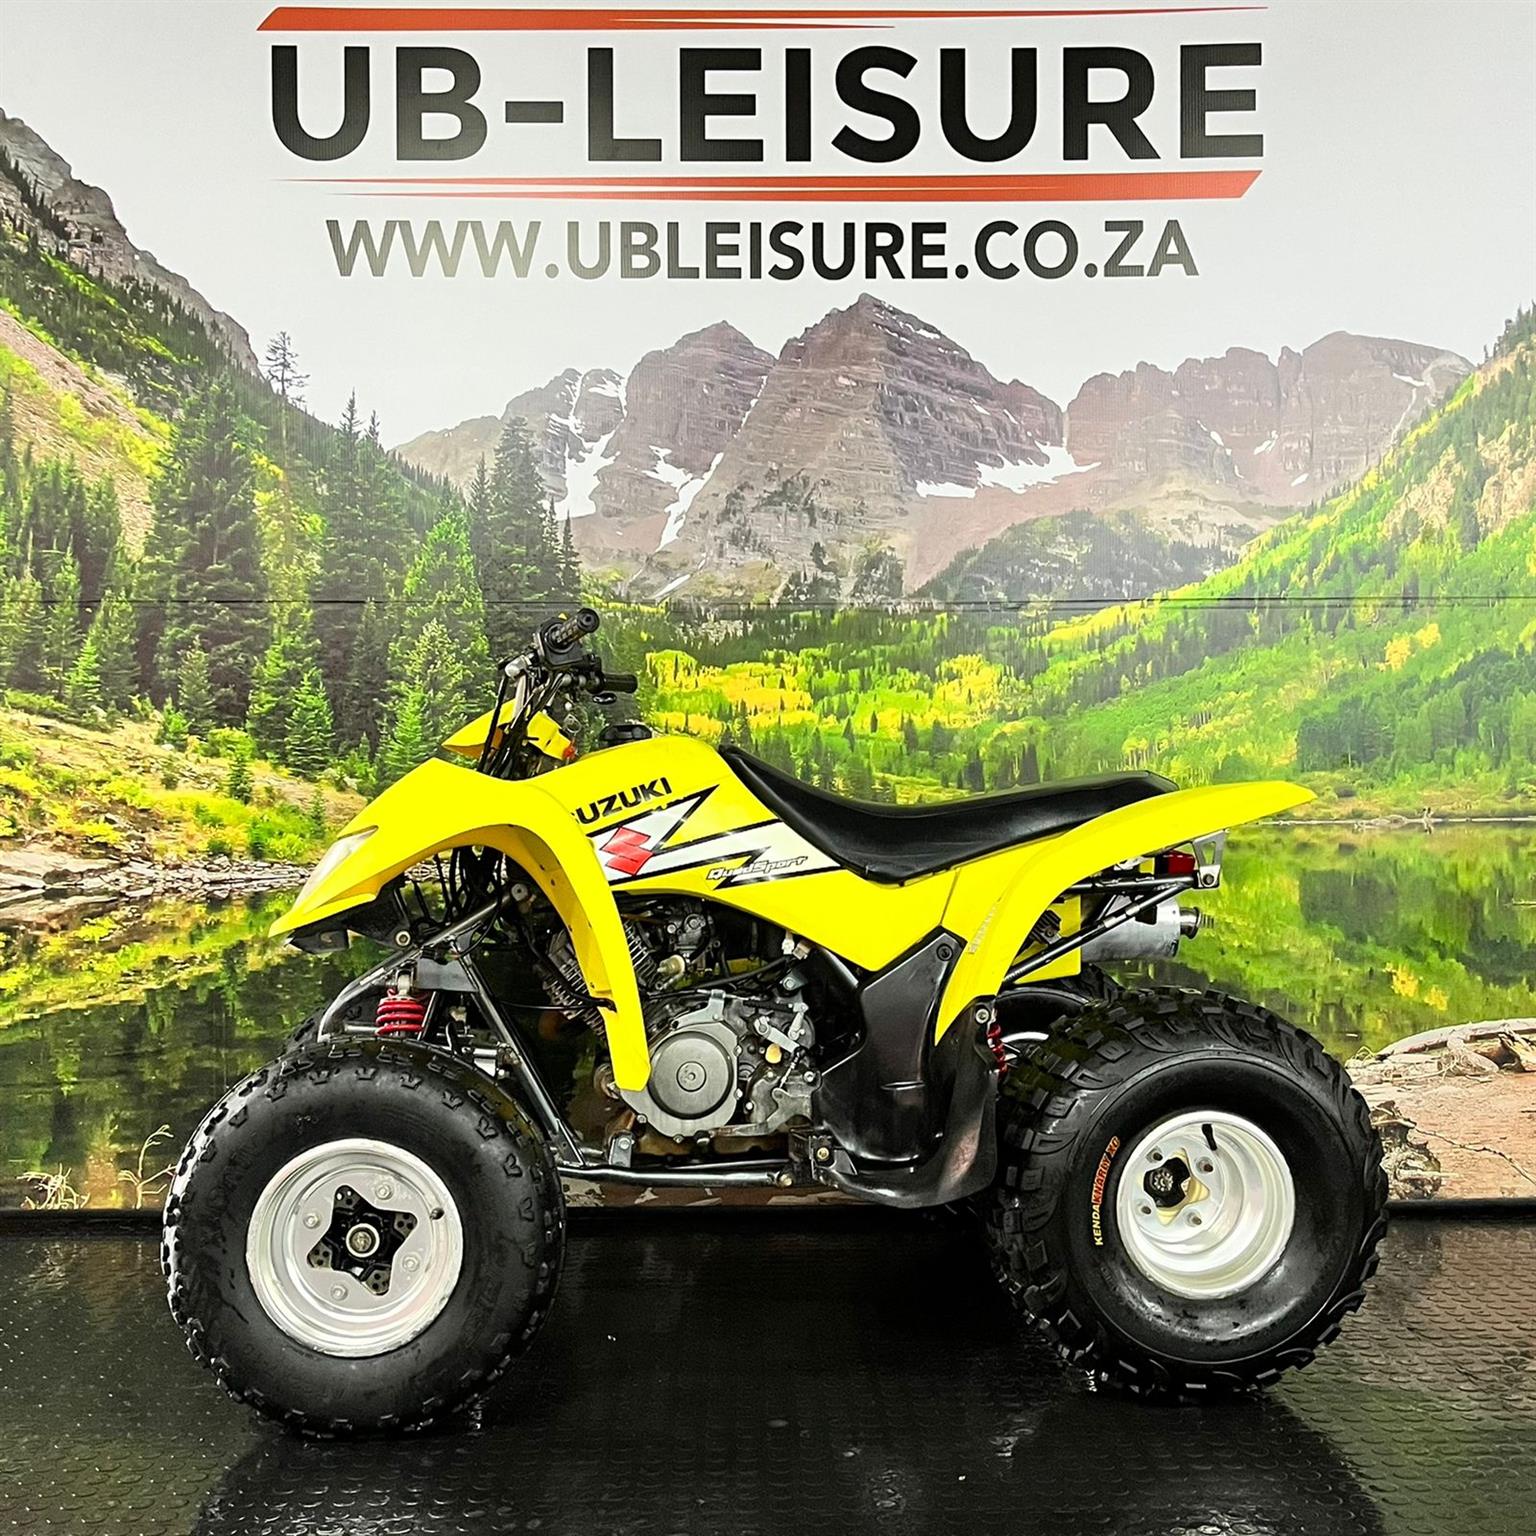 2004 Suzuki LTZ 250 | UB Leisure